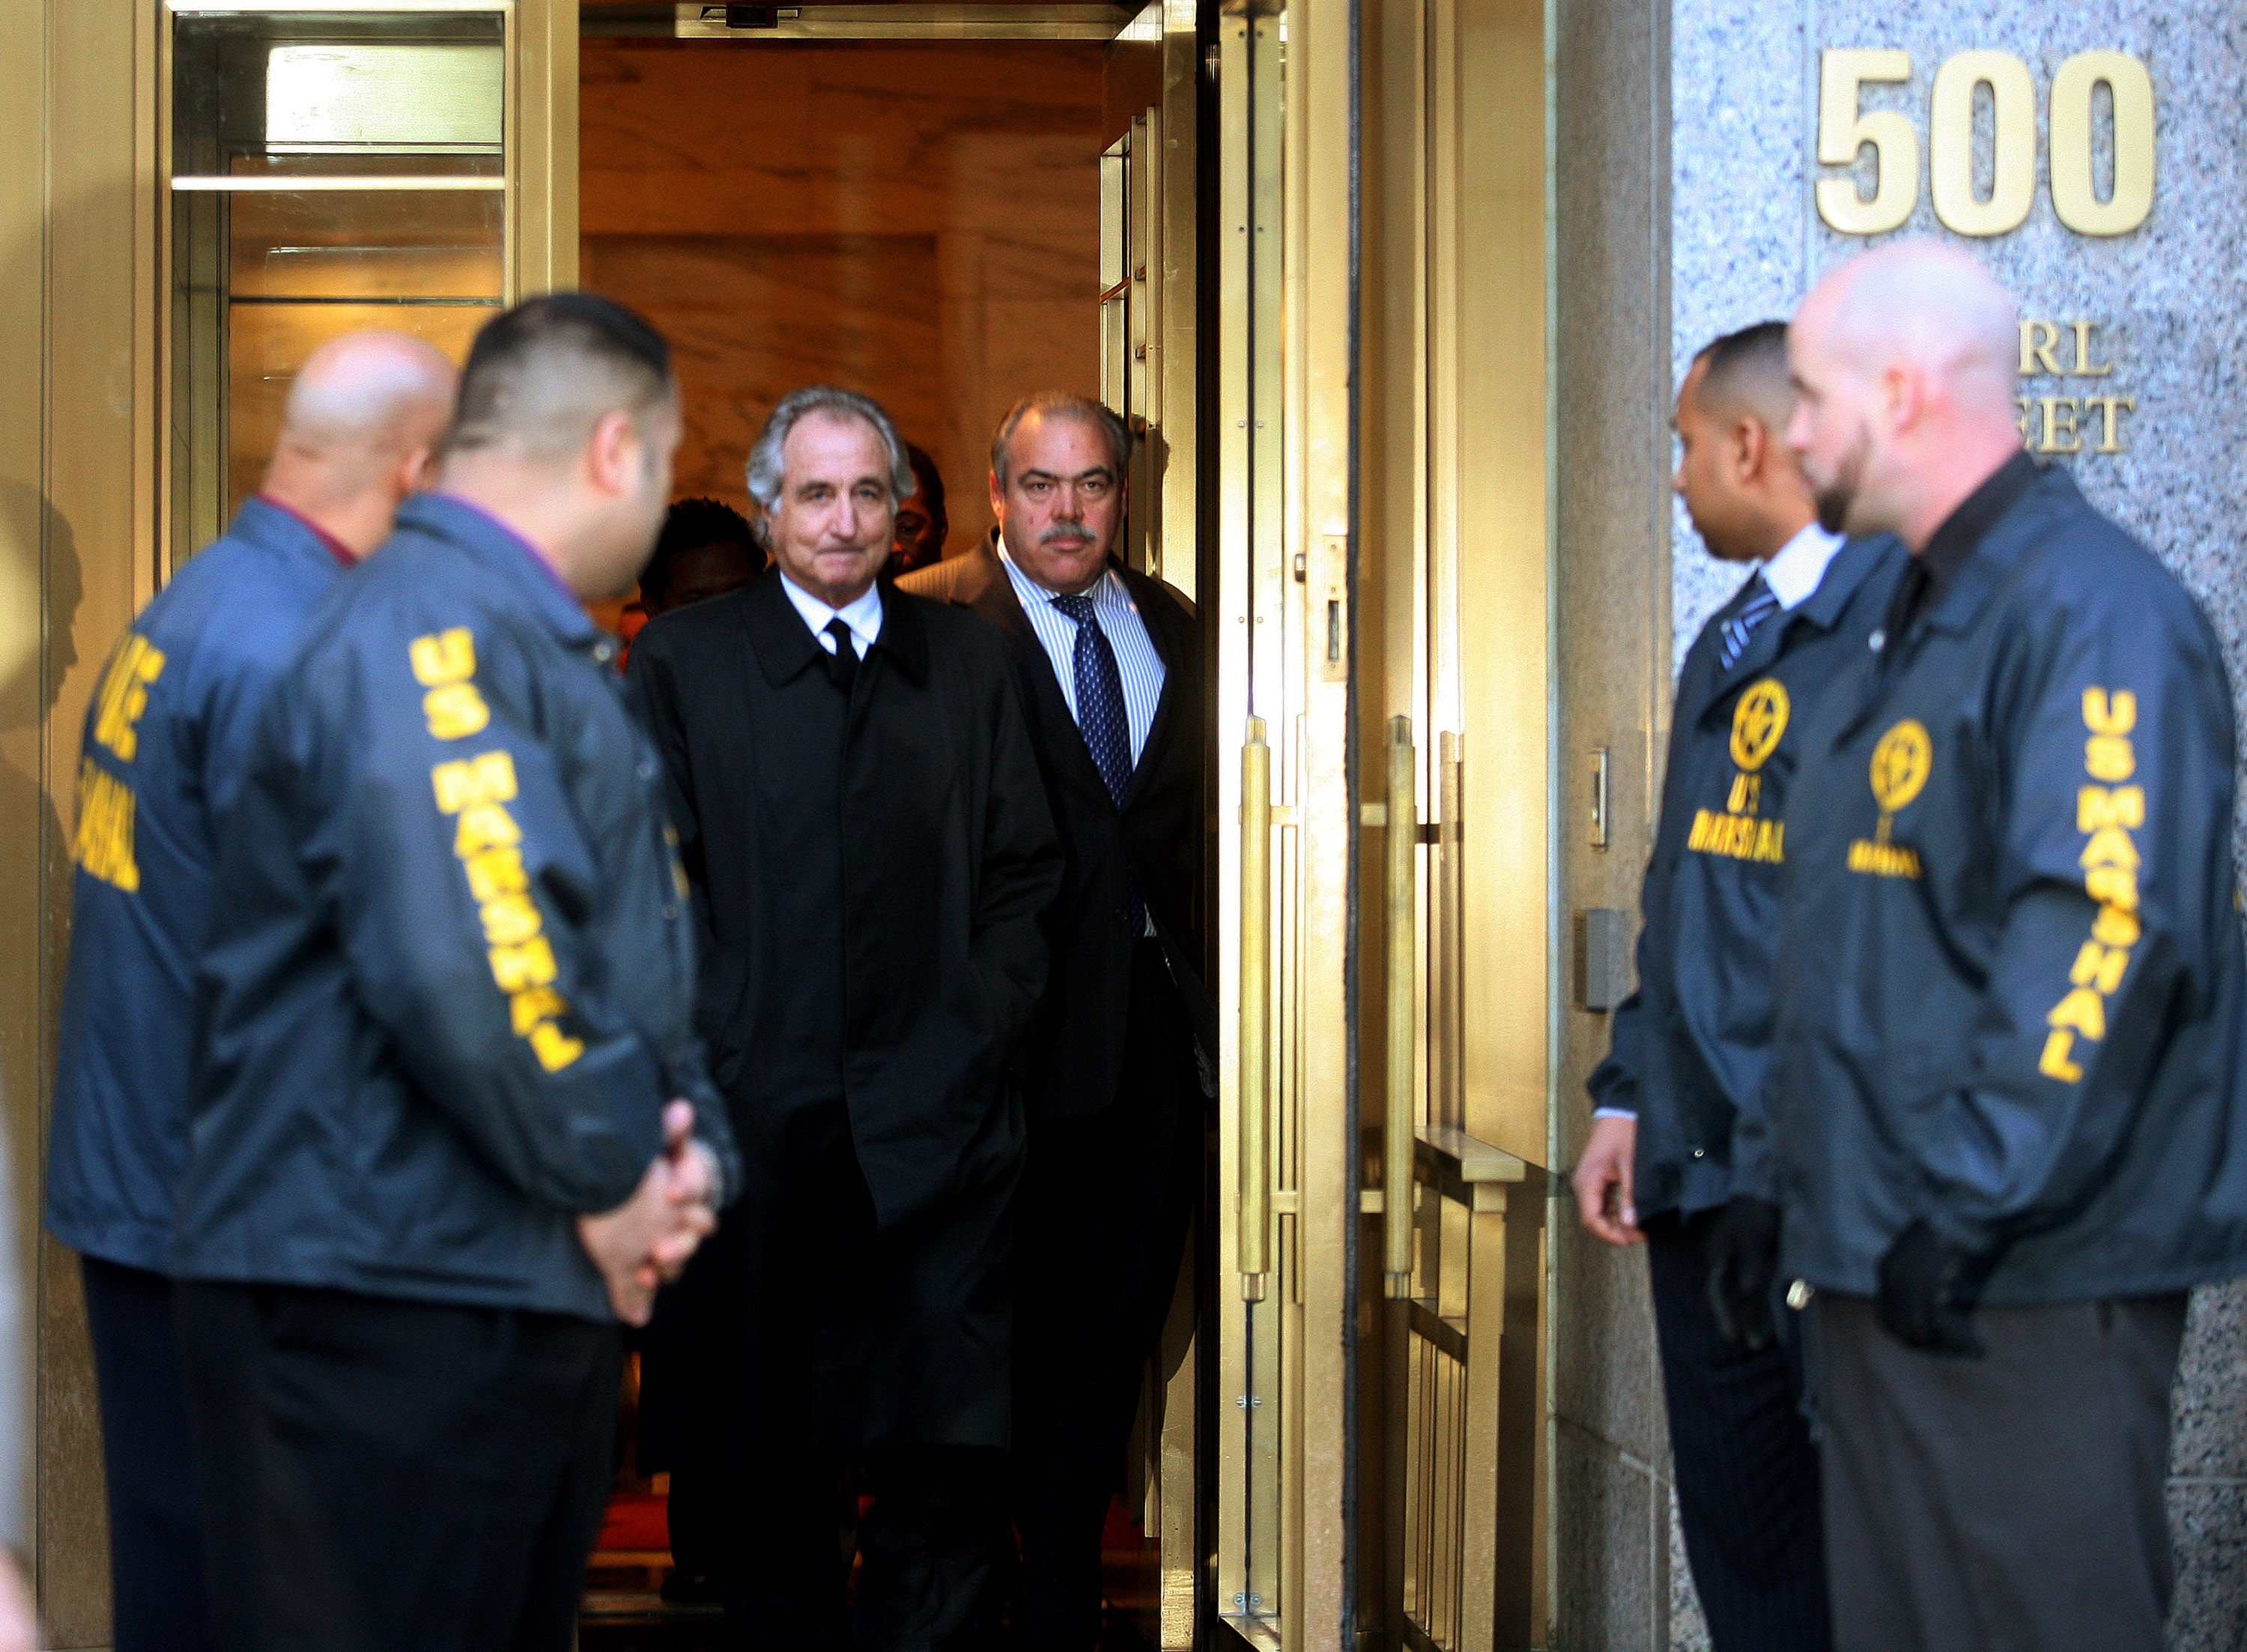 Bernard Madoff (C) sale del Tribunal Federal después de una audiencia de fianza en Manhattan el 5 de enero de 2009 en la ciudad de Nueva York (Photo by Hiroko Masuike/Getty Images)